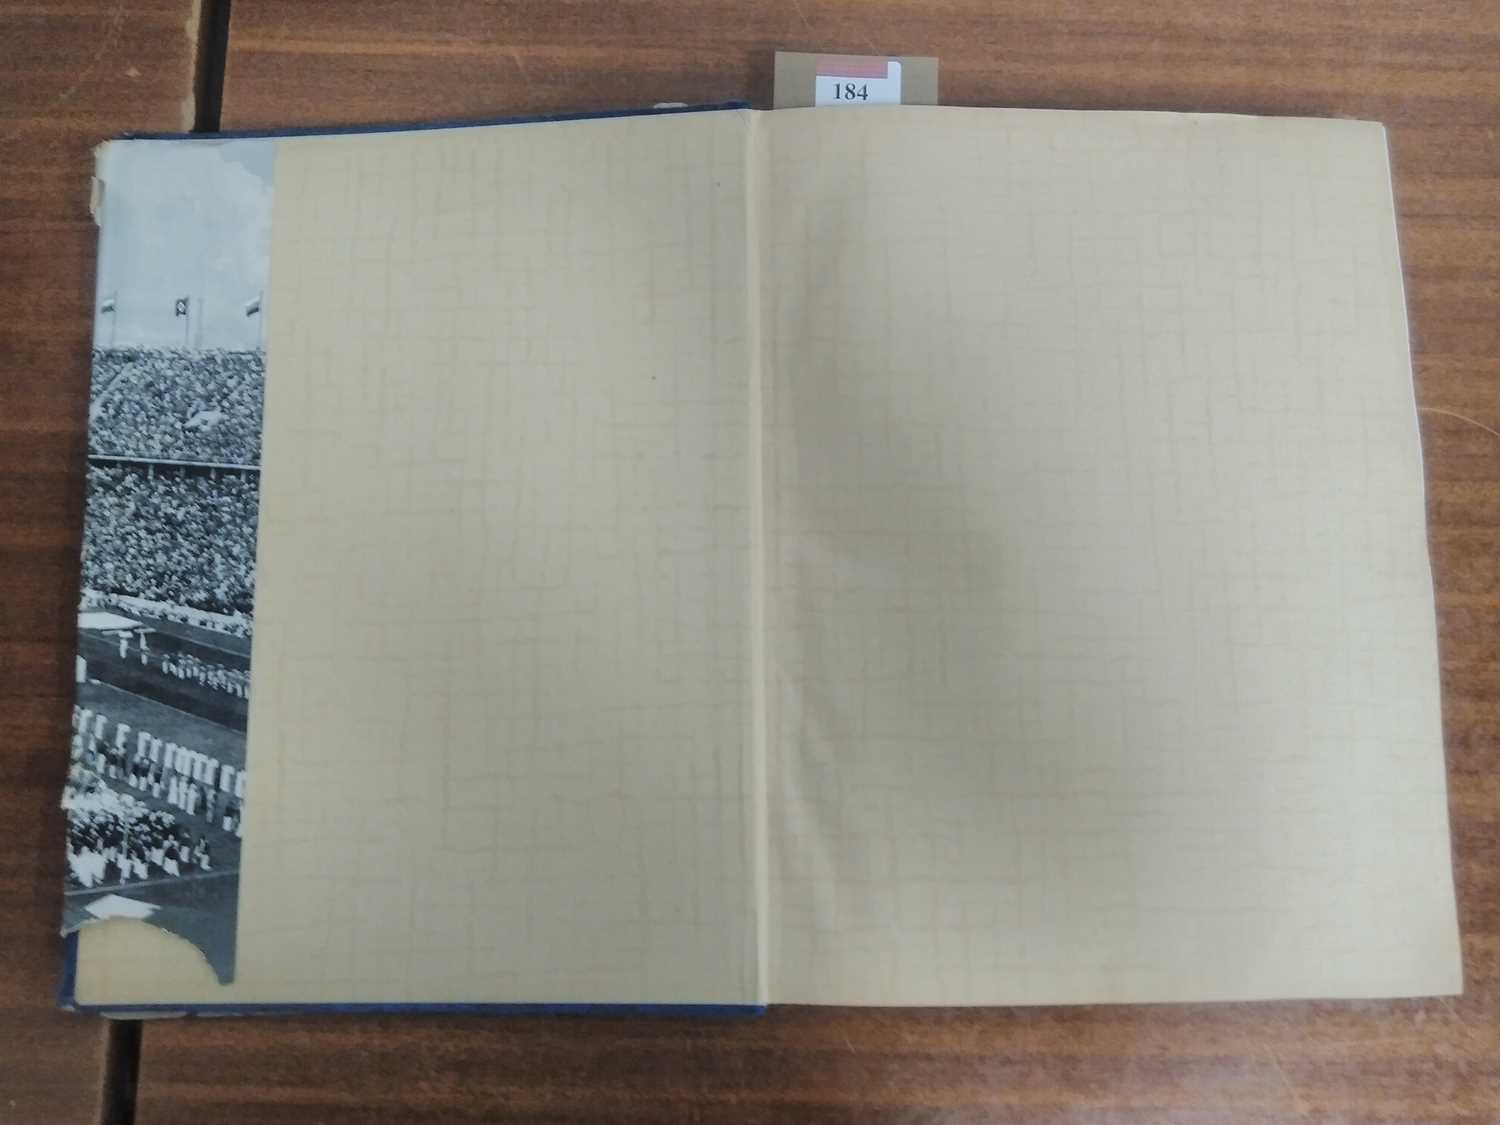 The German Third Reich 1936 Olympics photo-card book "Die Olympischen Spiele 1936", Cigaretten- - Image 6 of 7